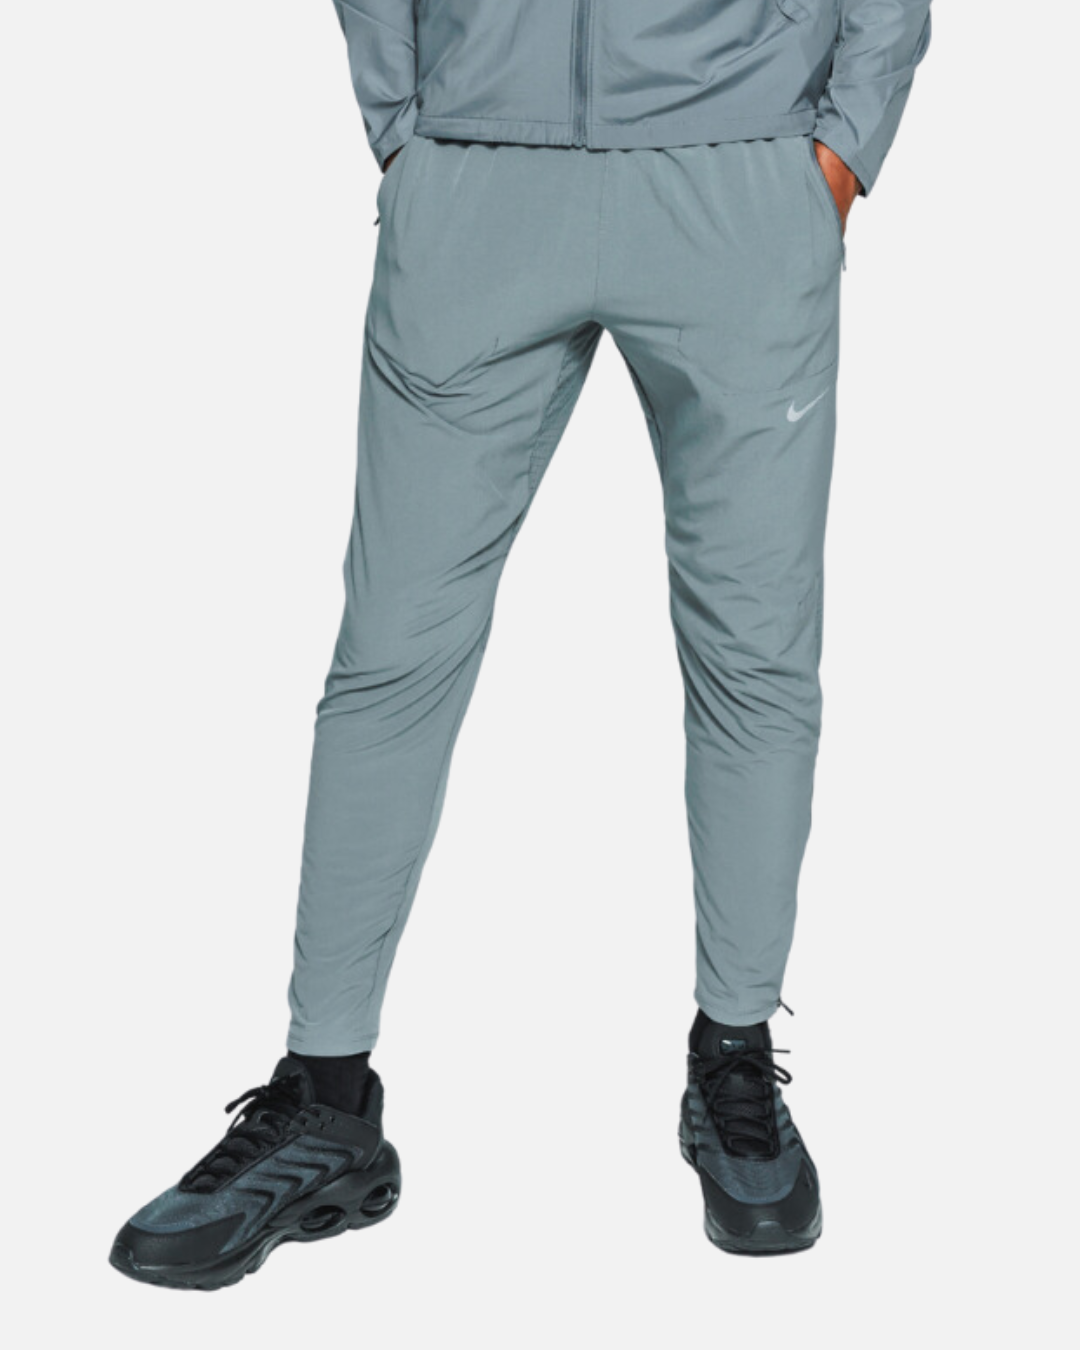 Pantalon Nike Phenom - Gris